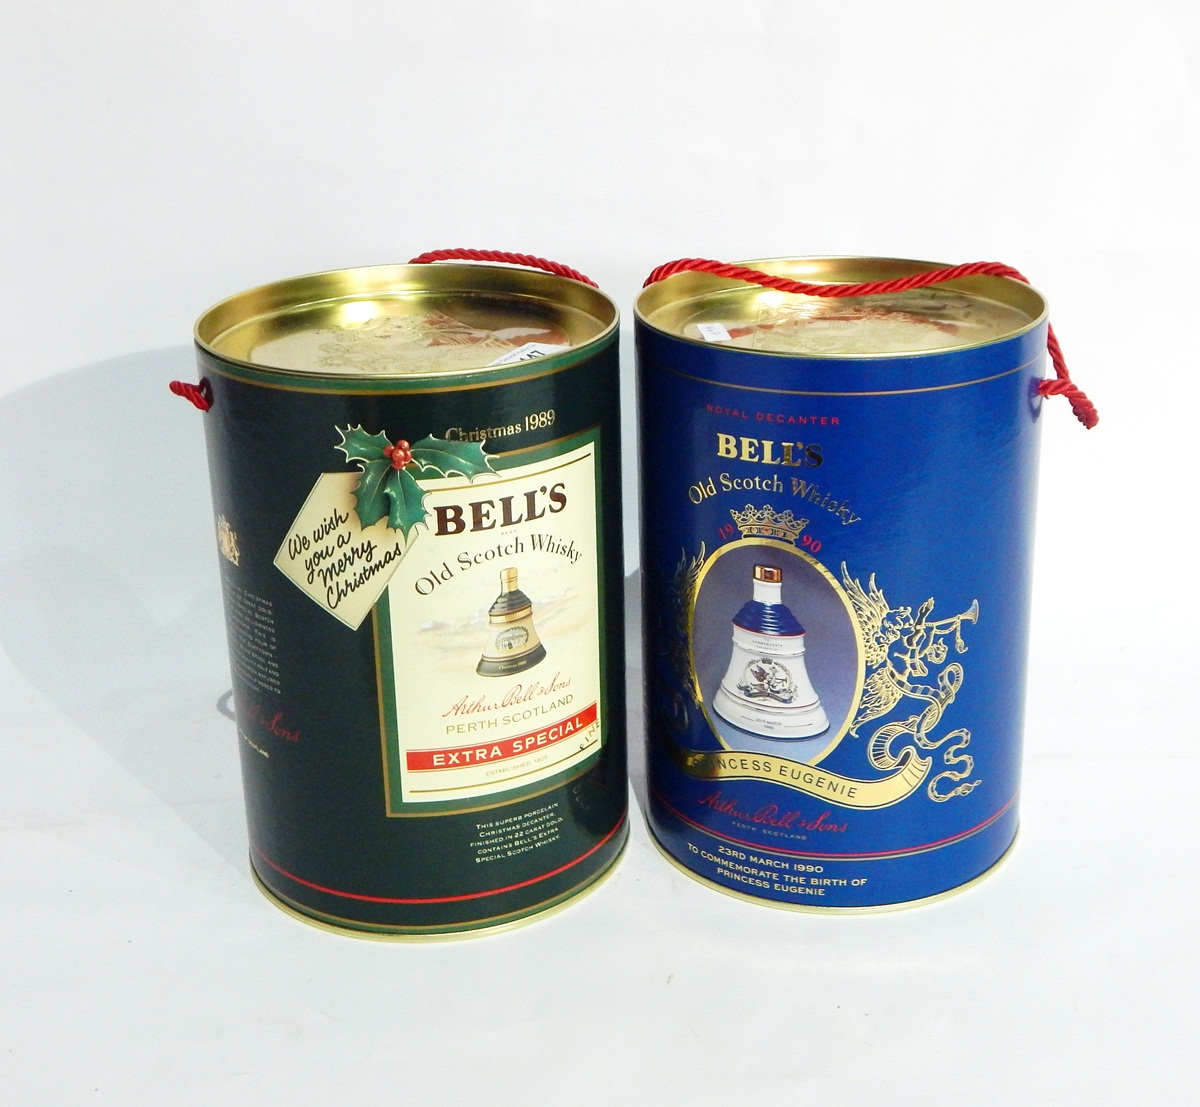 Bells Christmas whiskey for 1988, 1989,